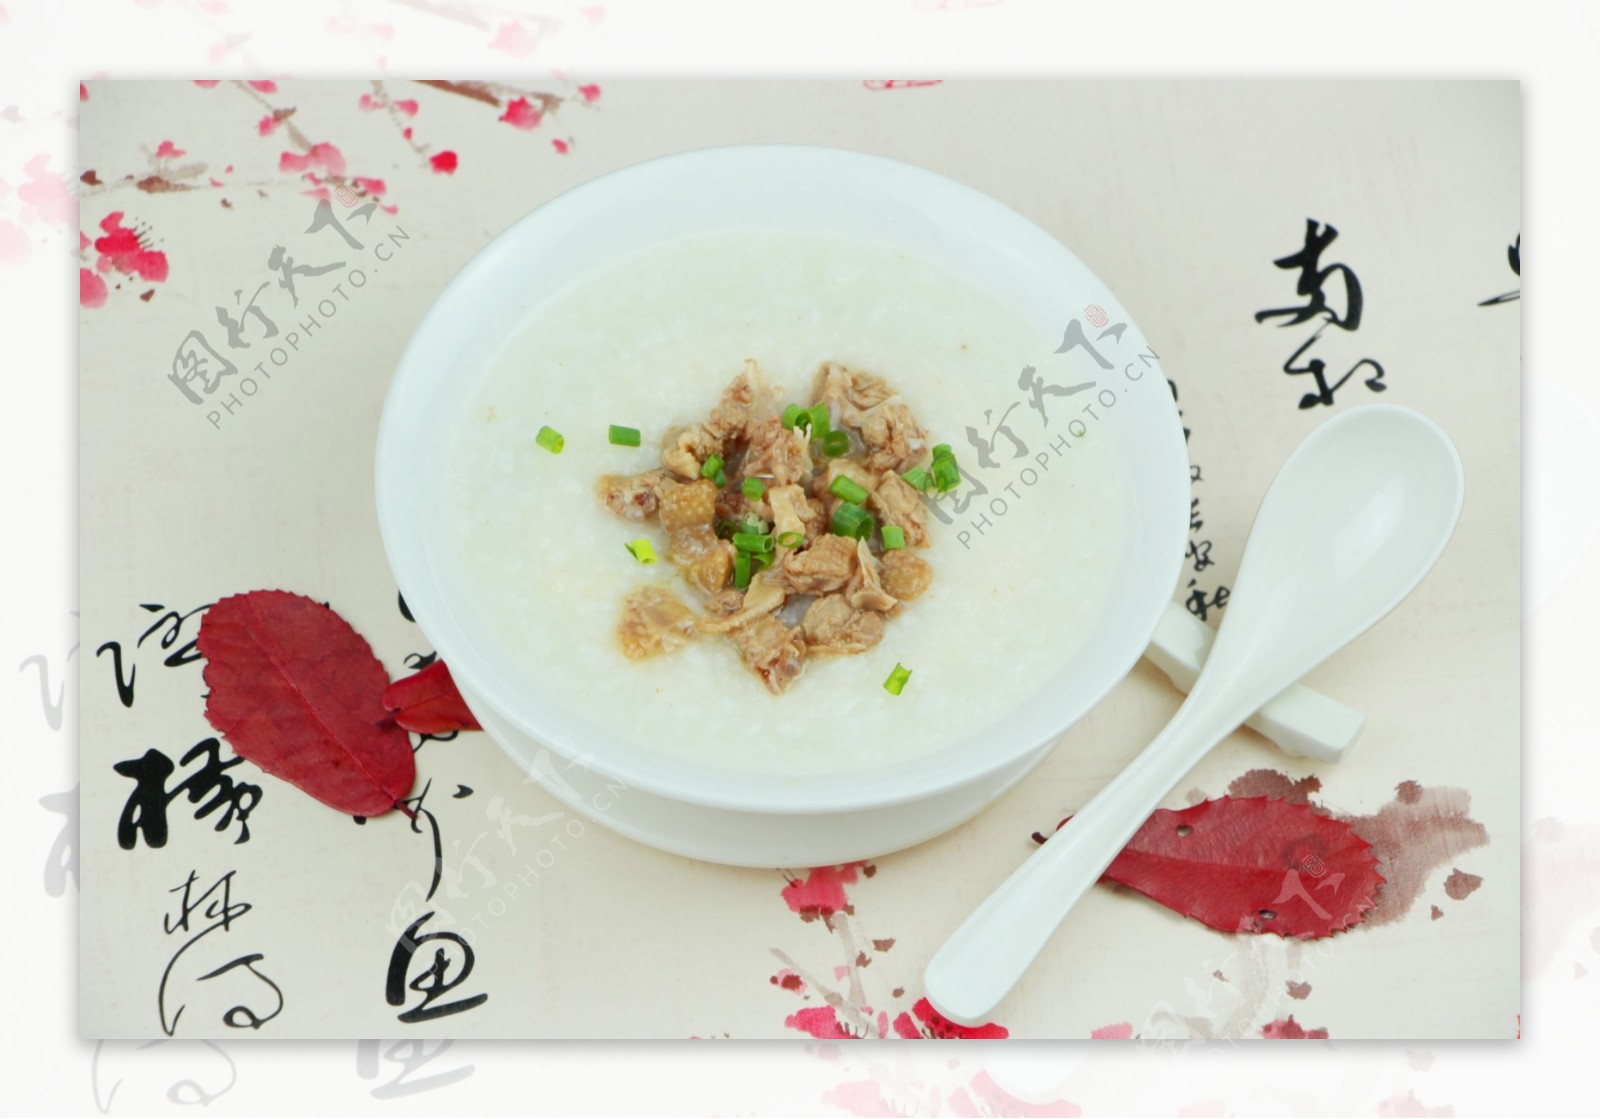 砂锅粥-鸽子粥的做法大全_砂锅粥-鸽子粥的家常做法 - 心食神